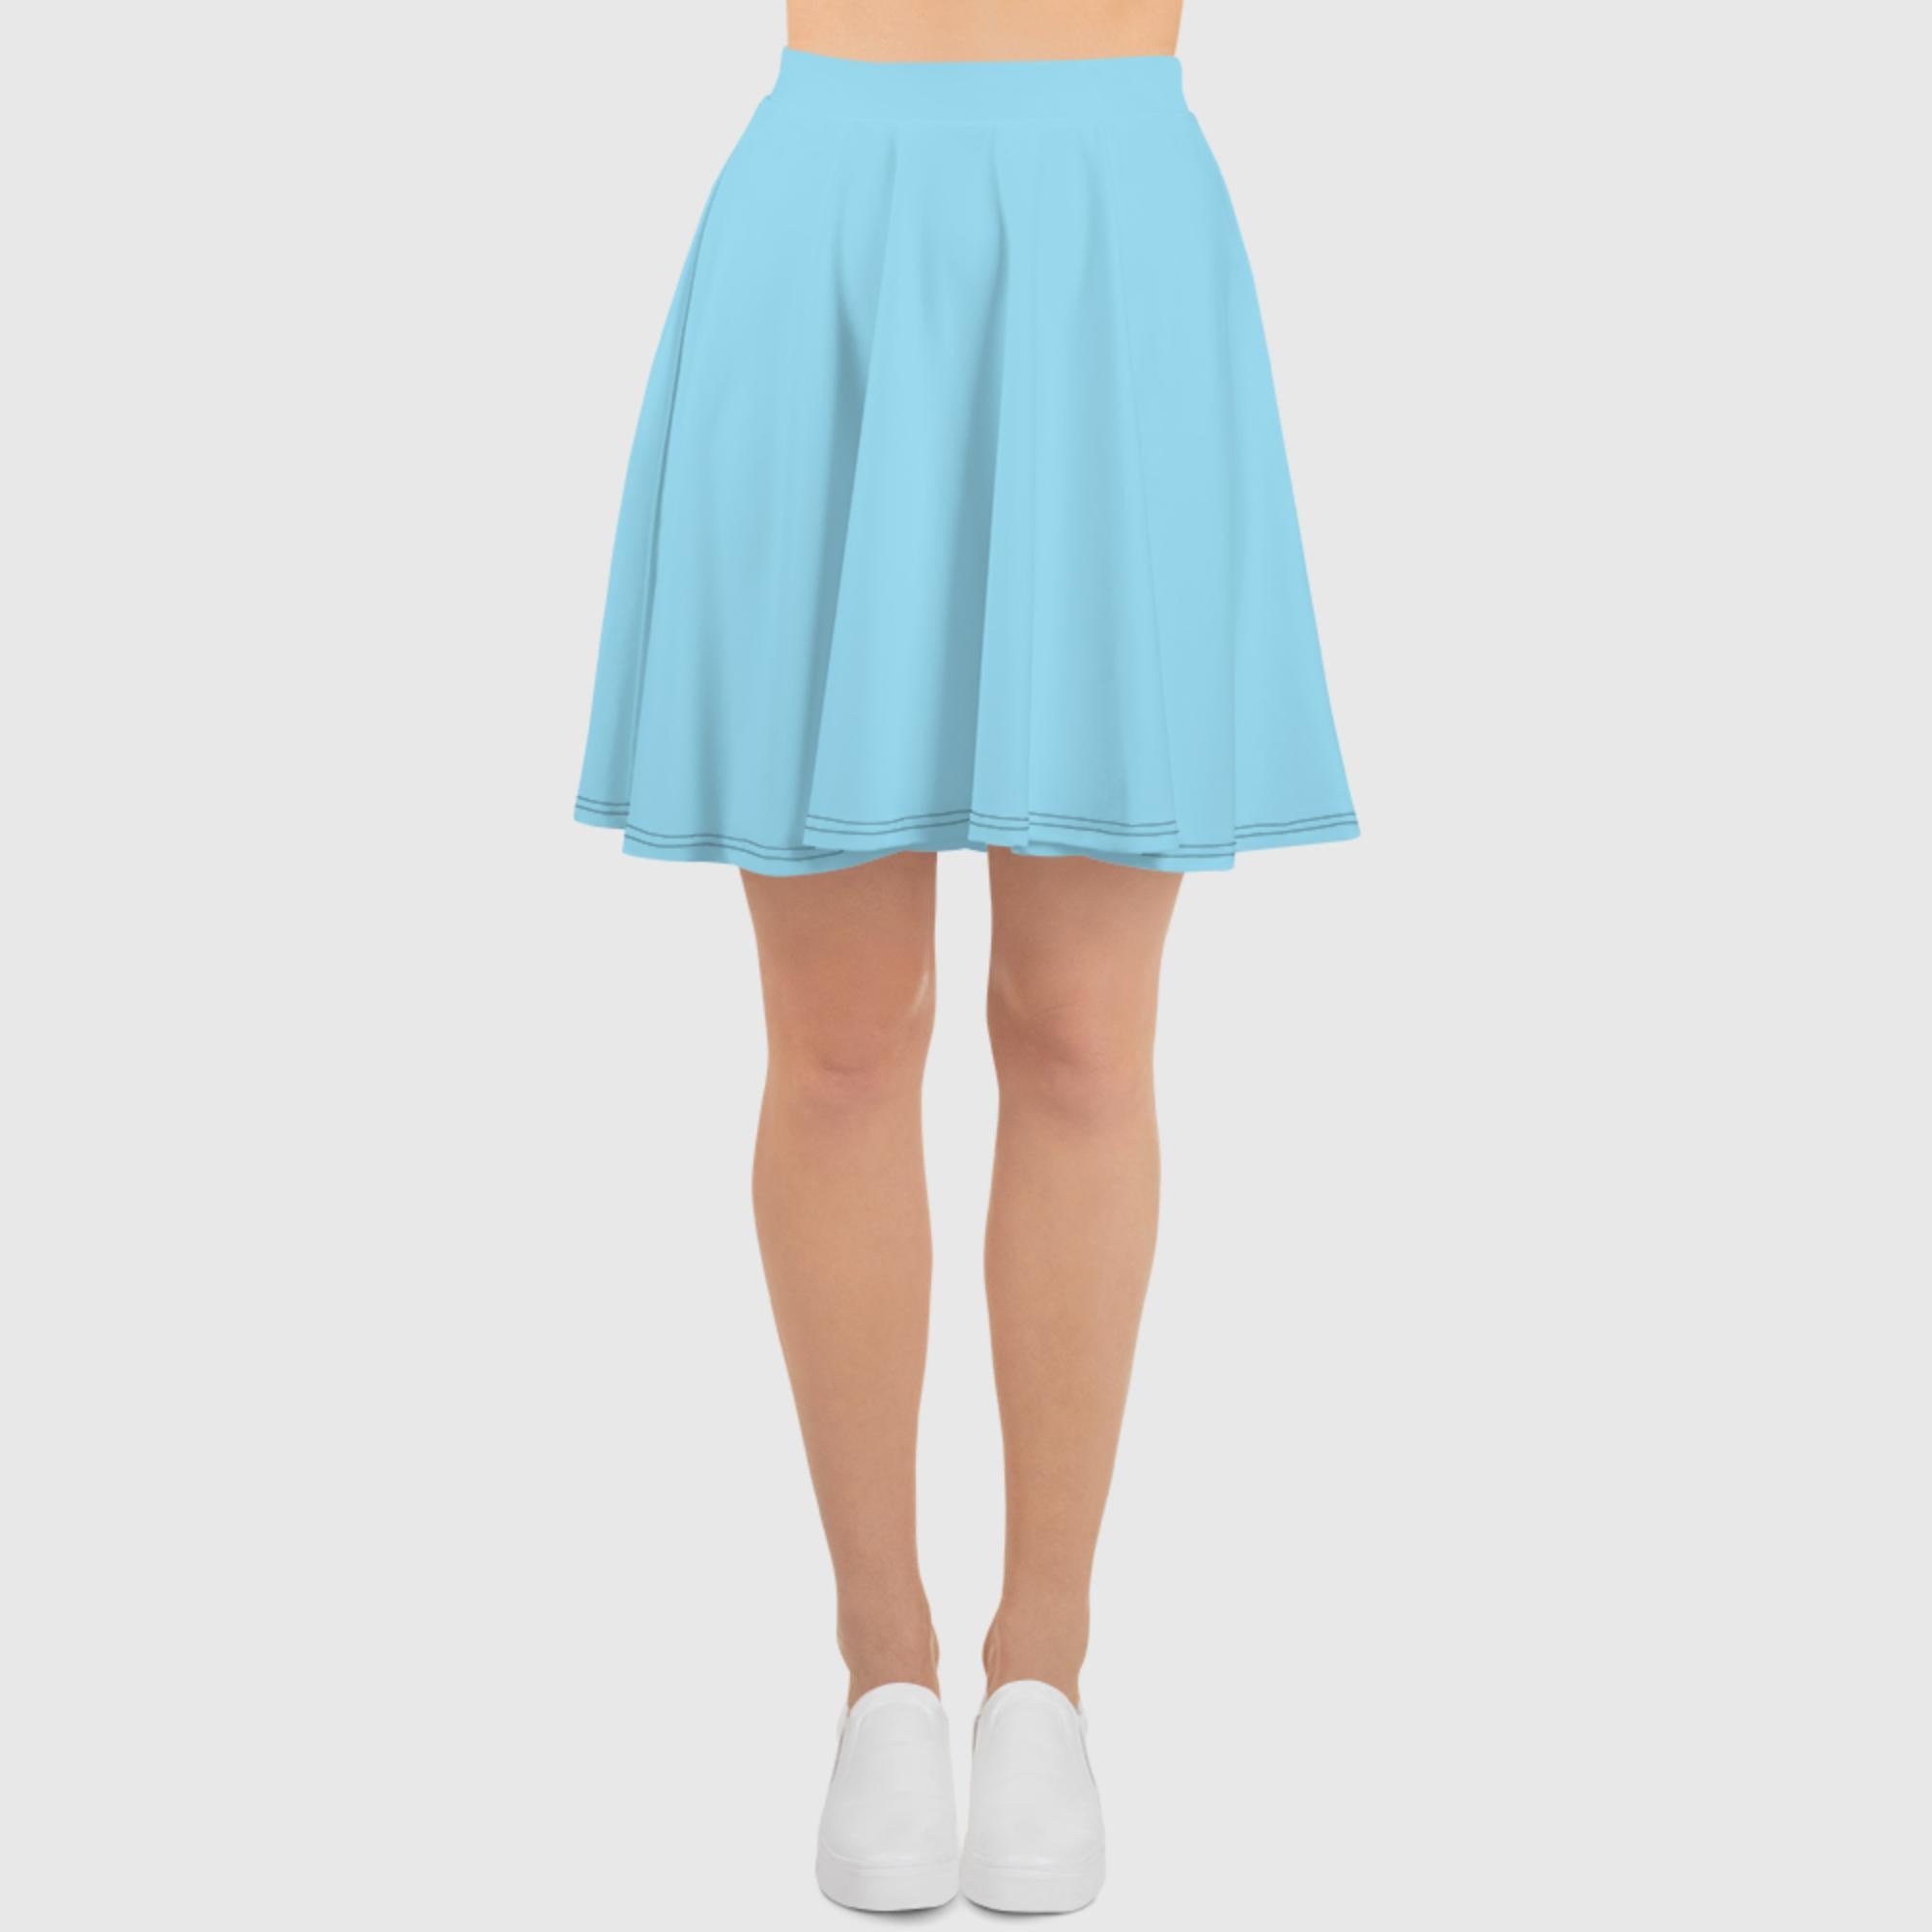 Skater Skirt - Light Blue - Sunset Harbor Clothing